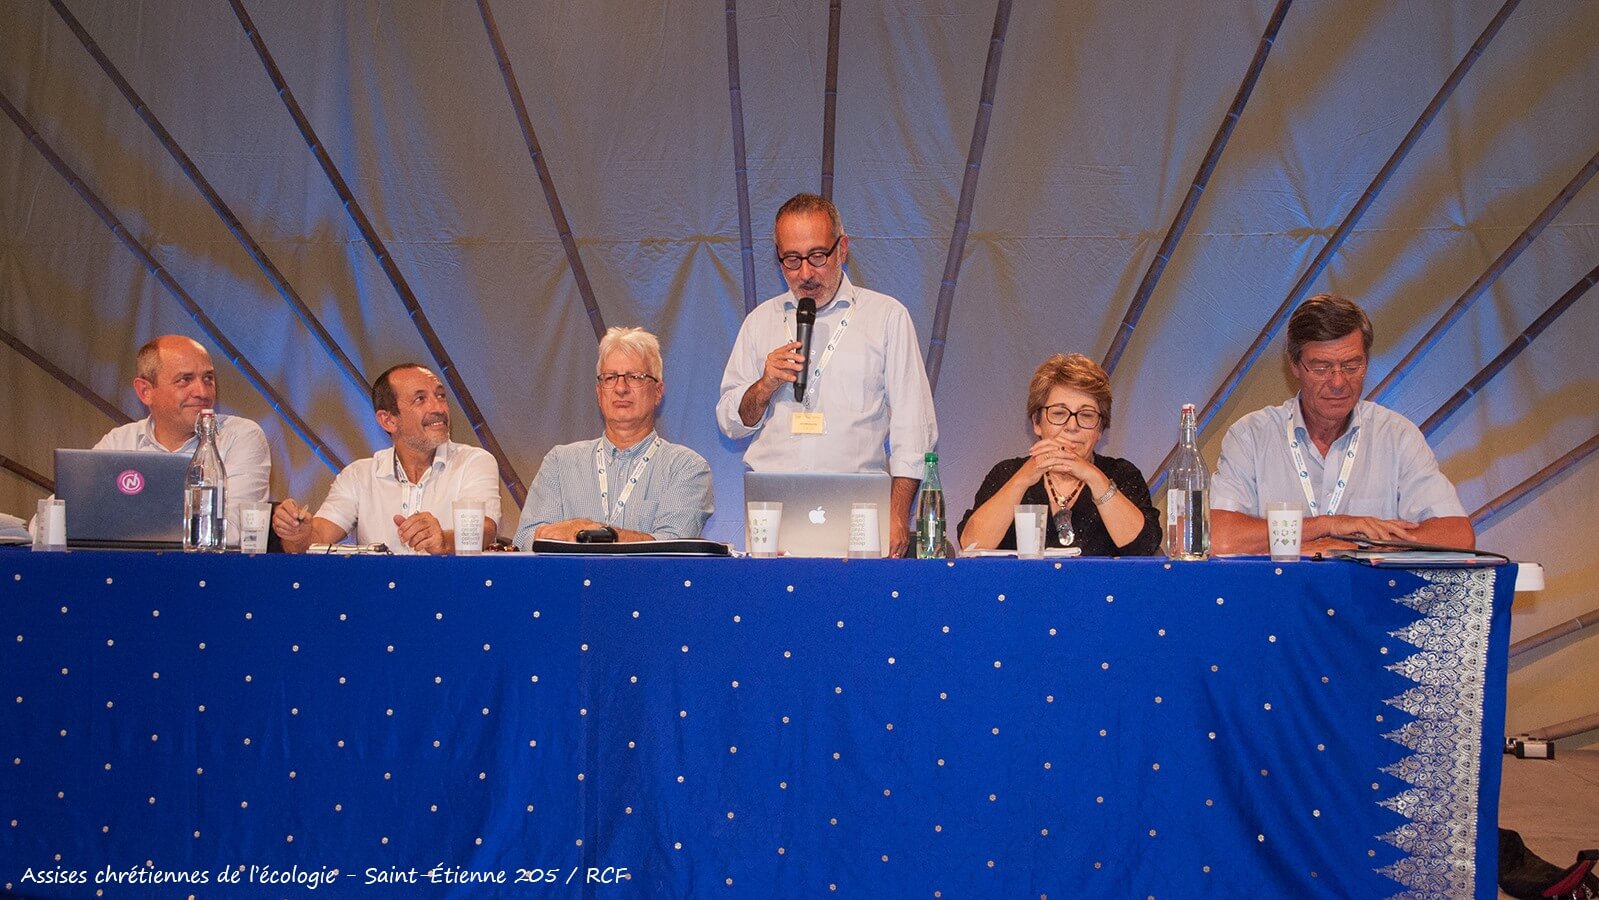 Les Assises Chrétiennes de l’Ecologie ont eu lieu à Saint-Etienne le 28, 29 et 30 août